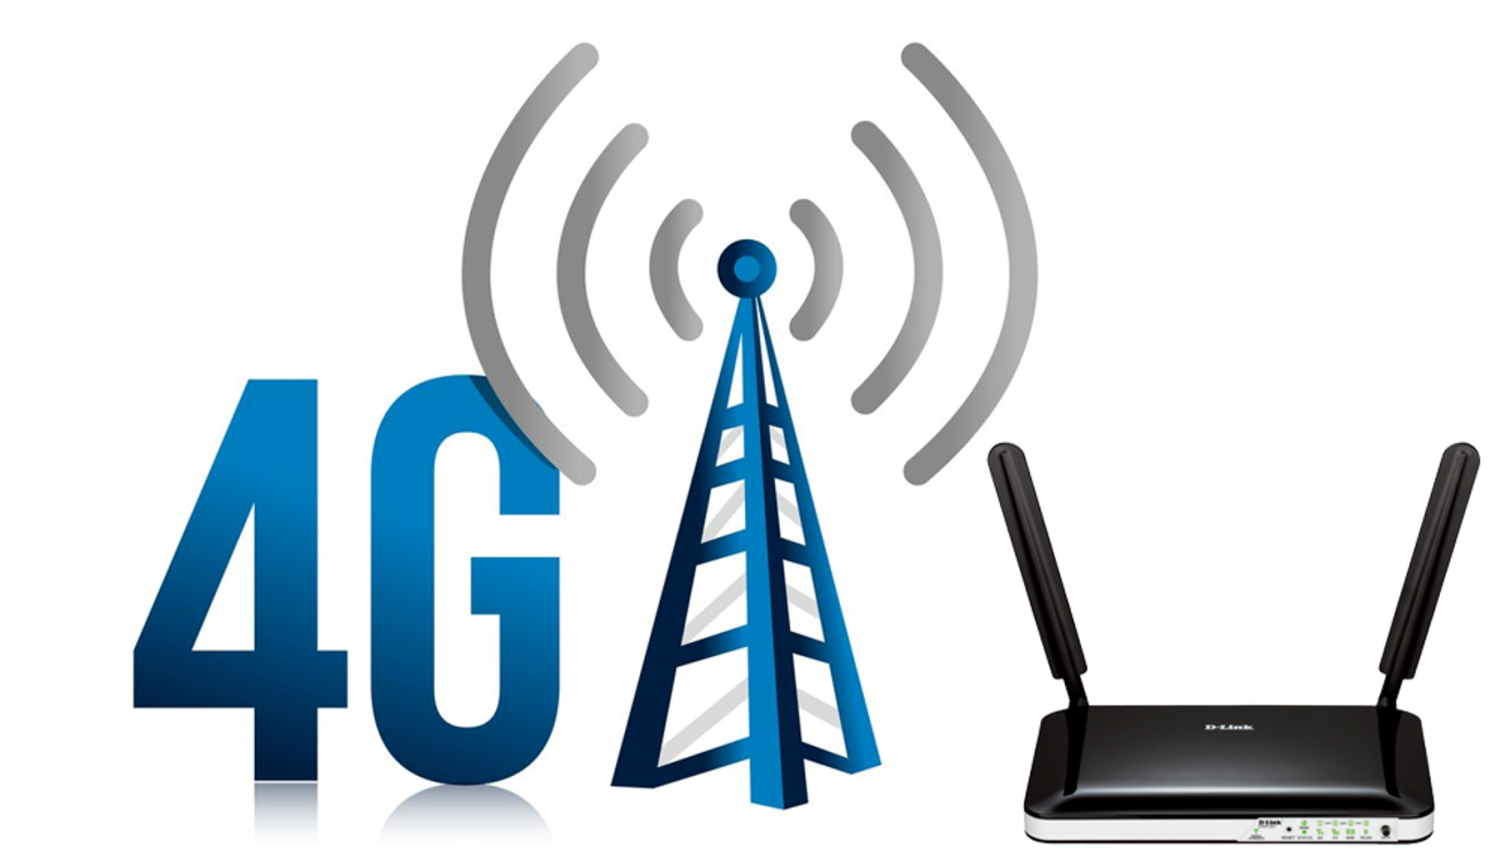 Сети сотовой связи 4g. 4g LTE. 3g 4g LTE device. Мобильная сеть 4g (WIMAX va LTE). Мобильный интернет пермский край